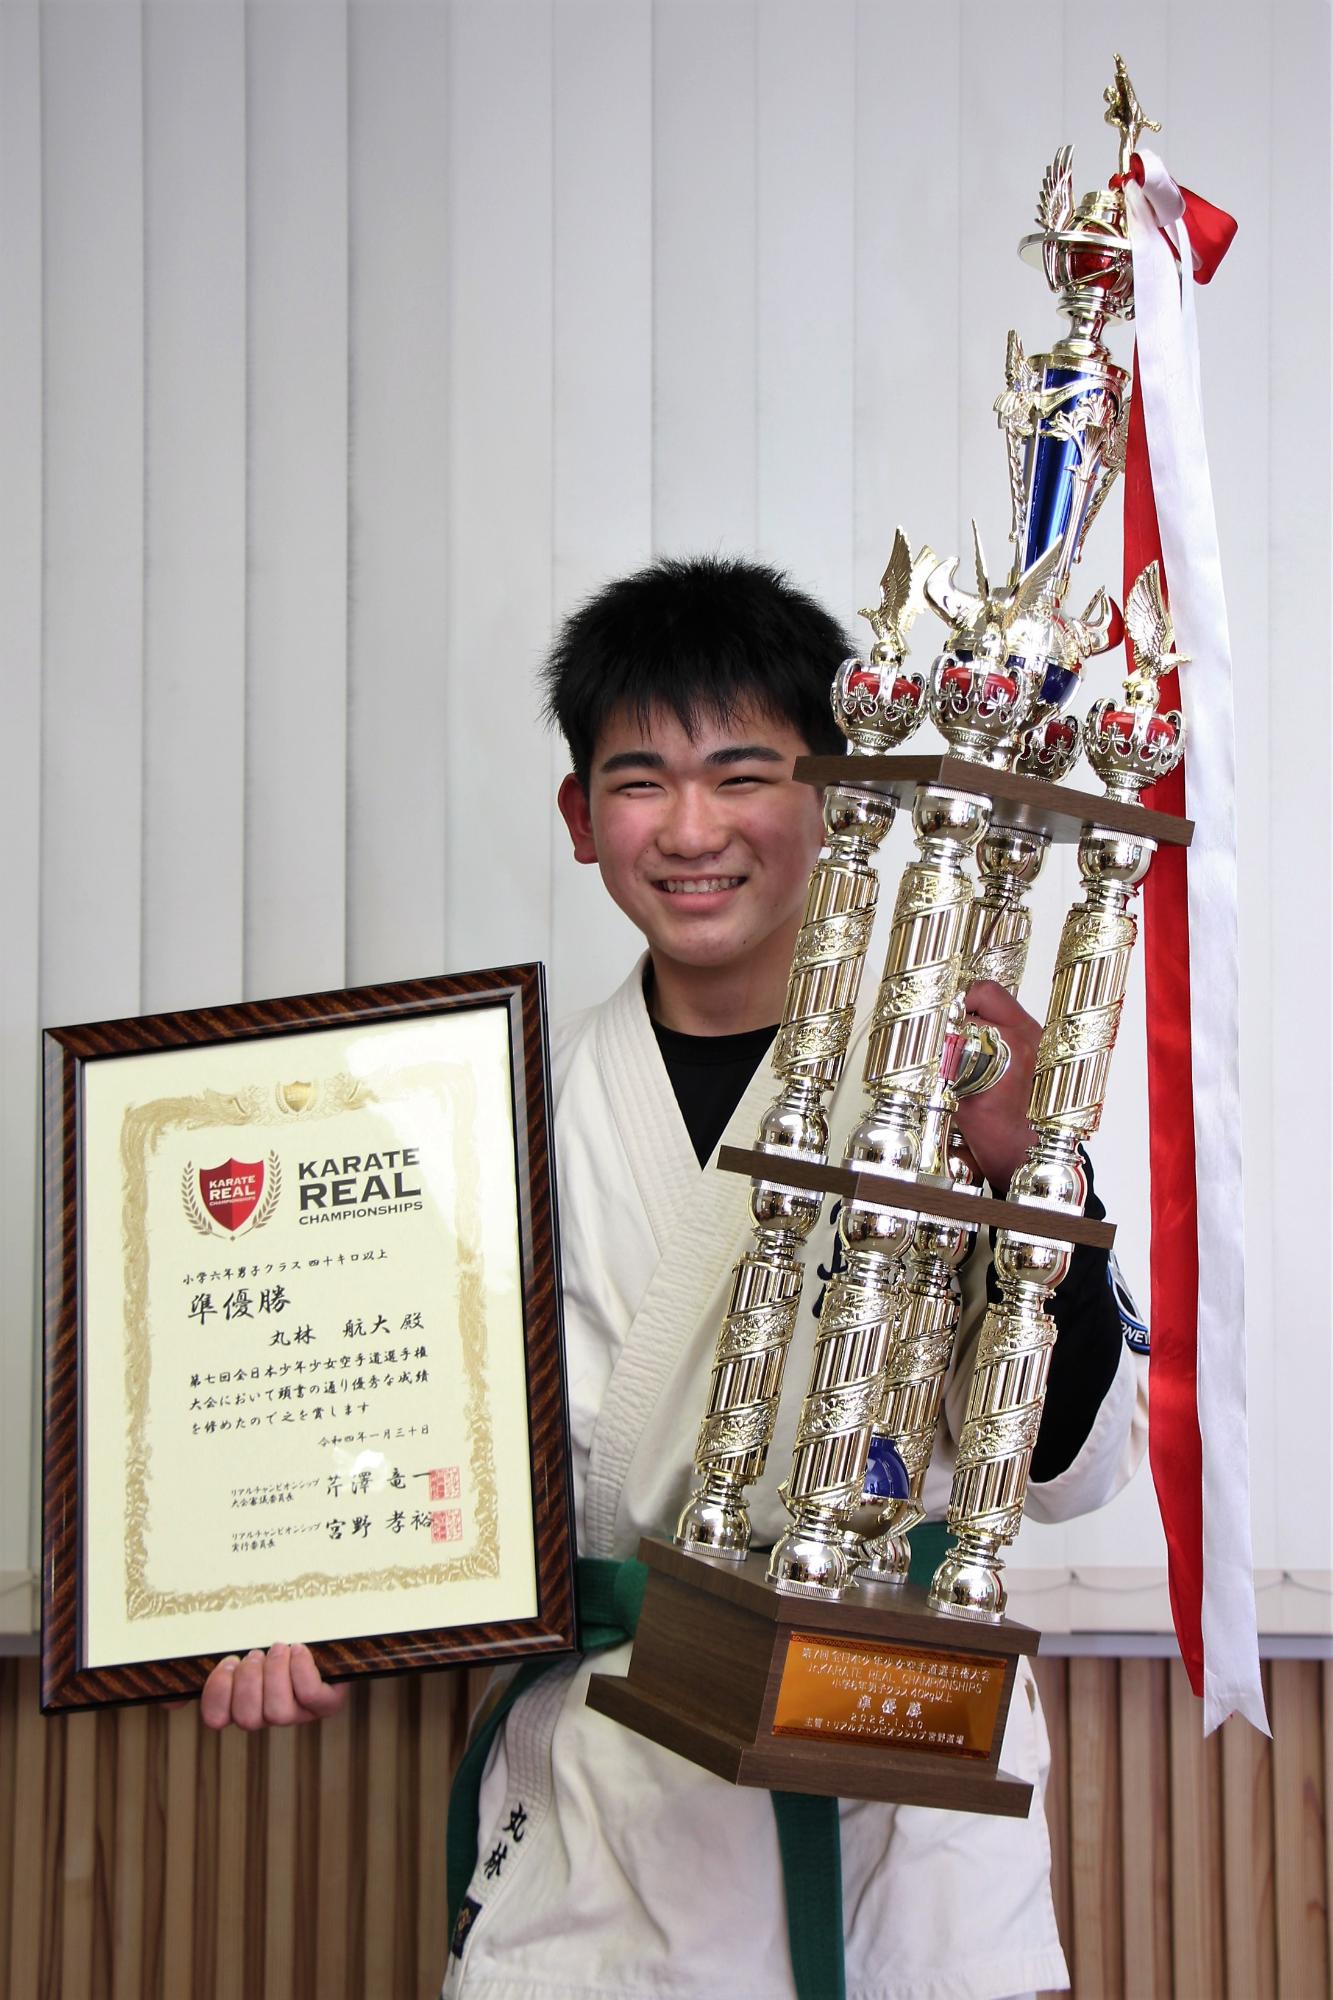 第7回全日本少年少女空手道選手権大会の準優勝トロフィーと賞状を手に笑顔を見せる丸林航大君の写真